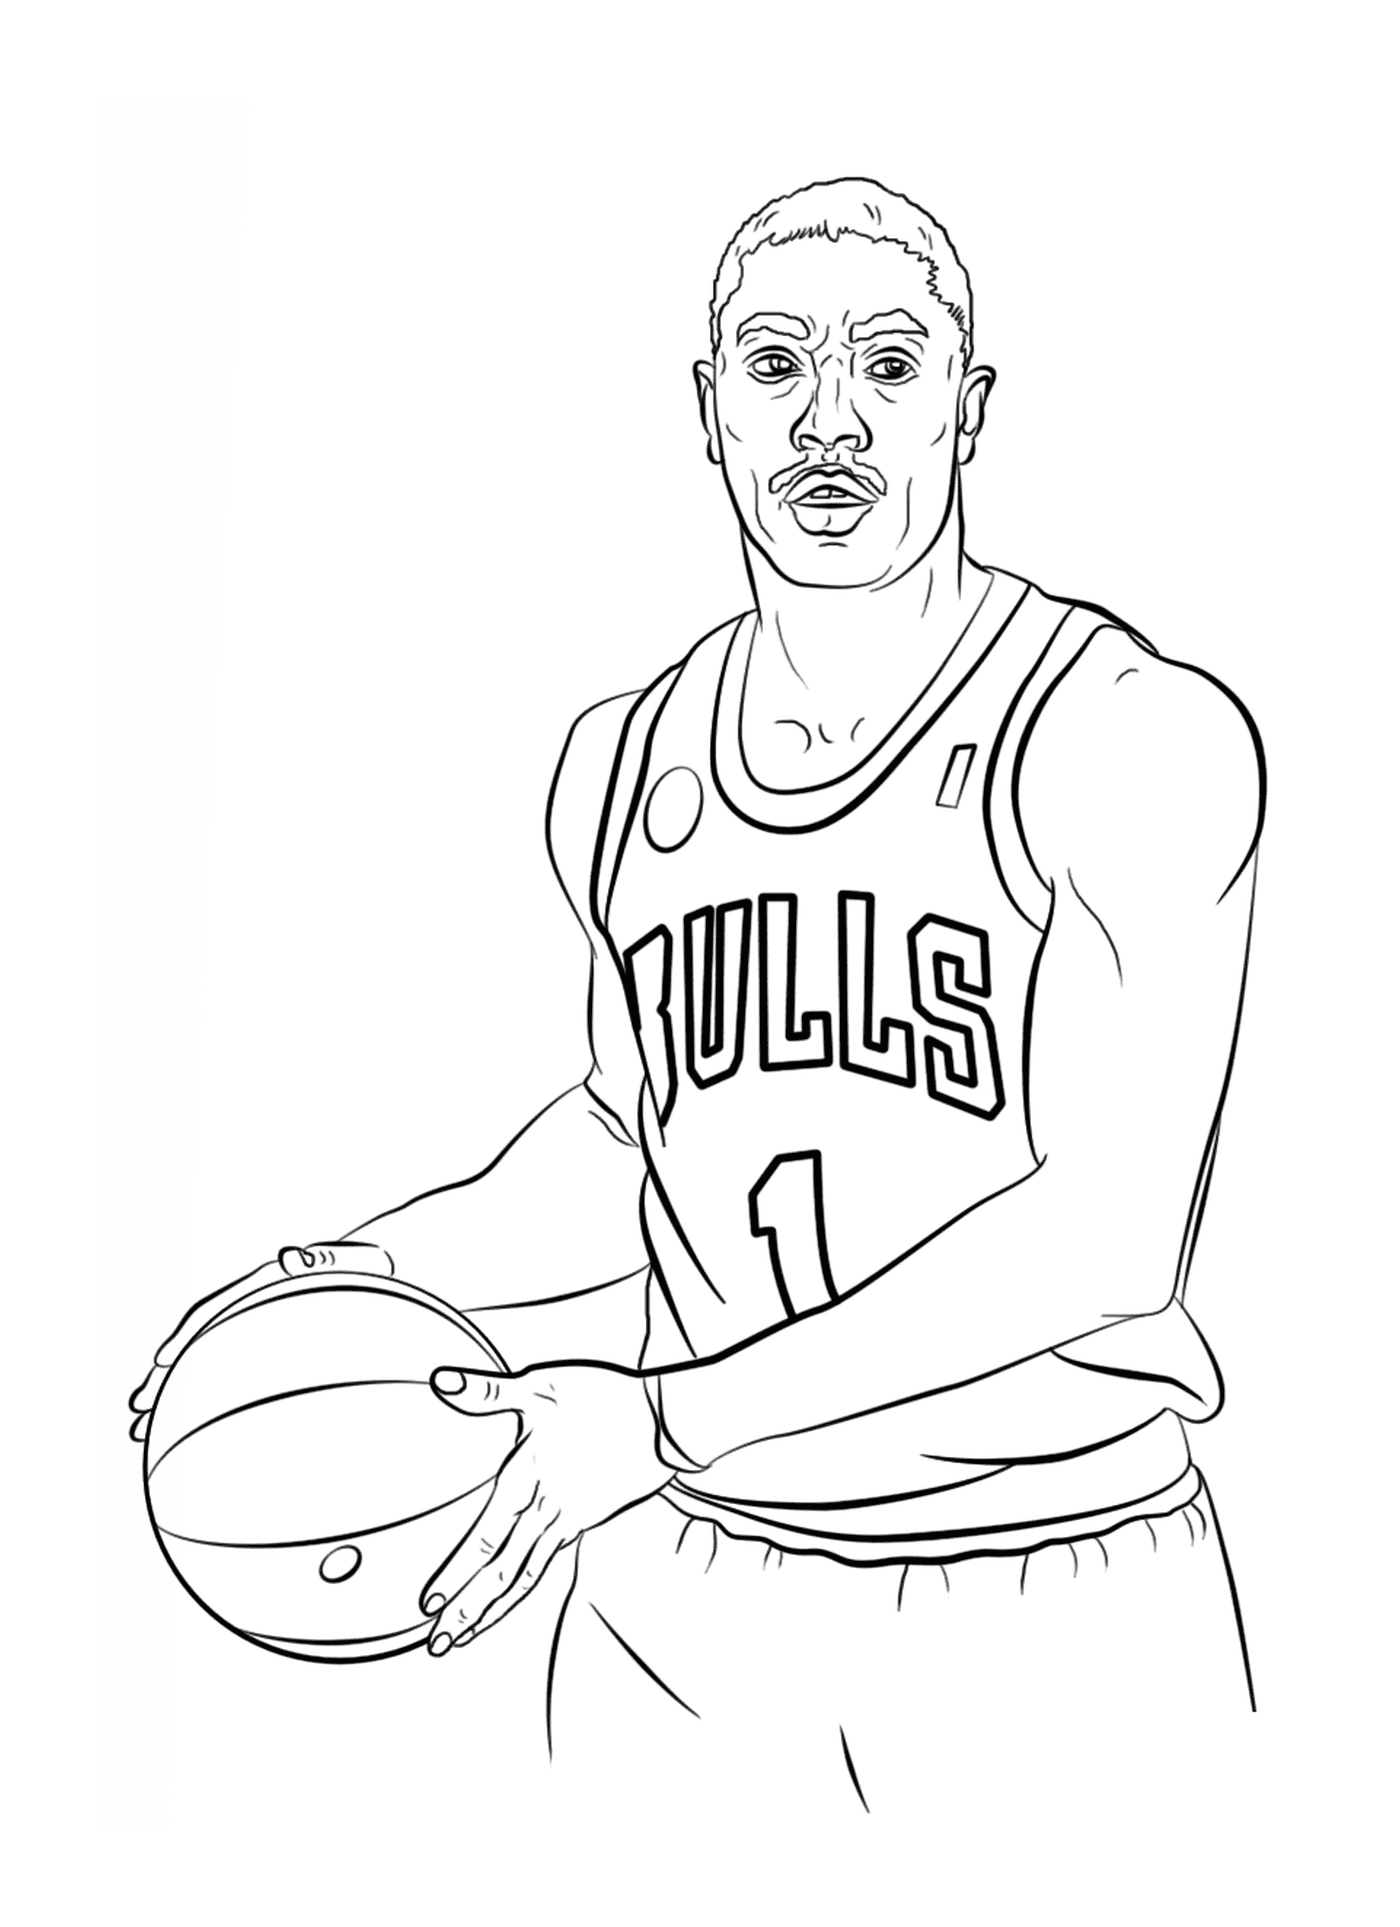  Деррик Роуз держит баскетбольный мяч 